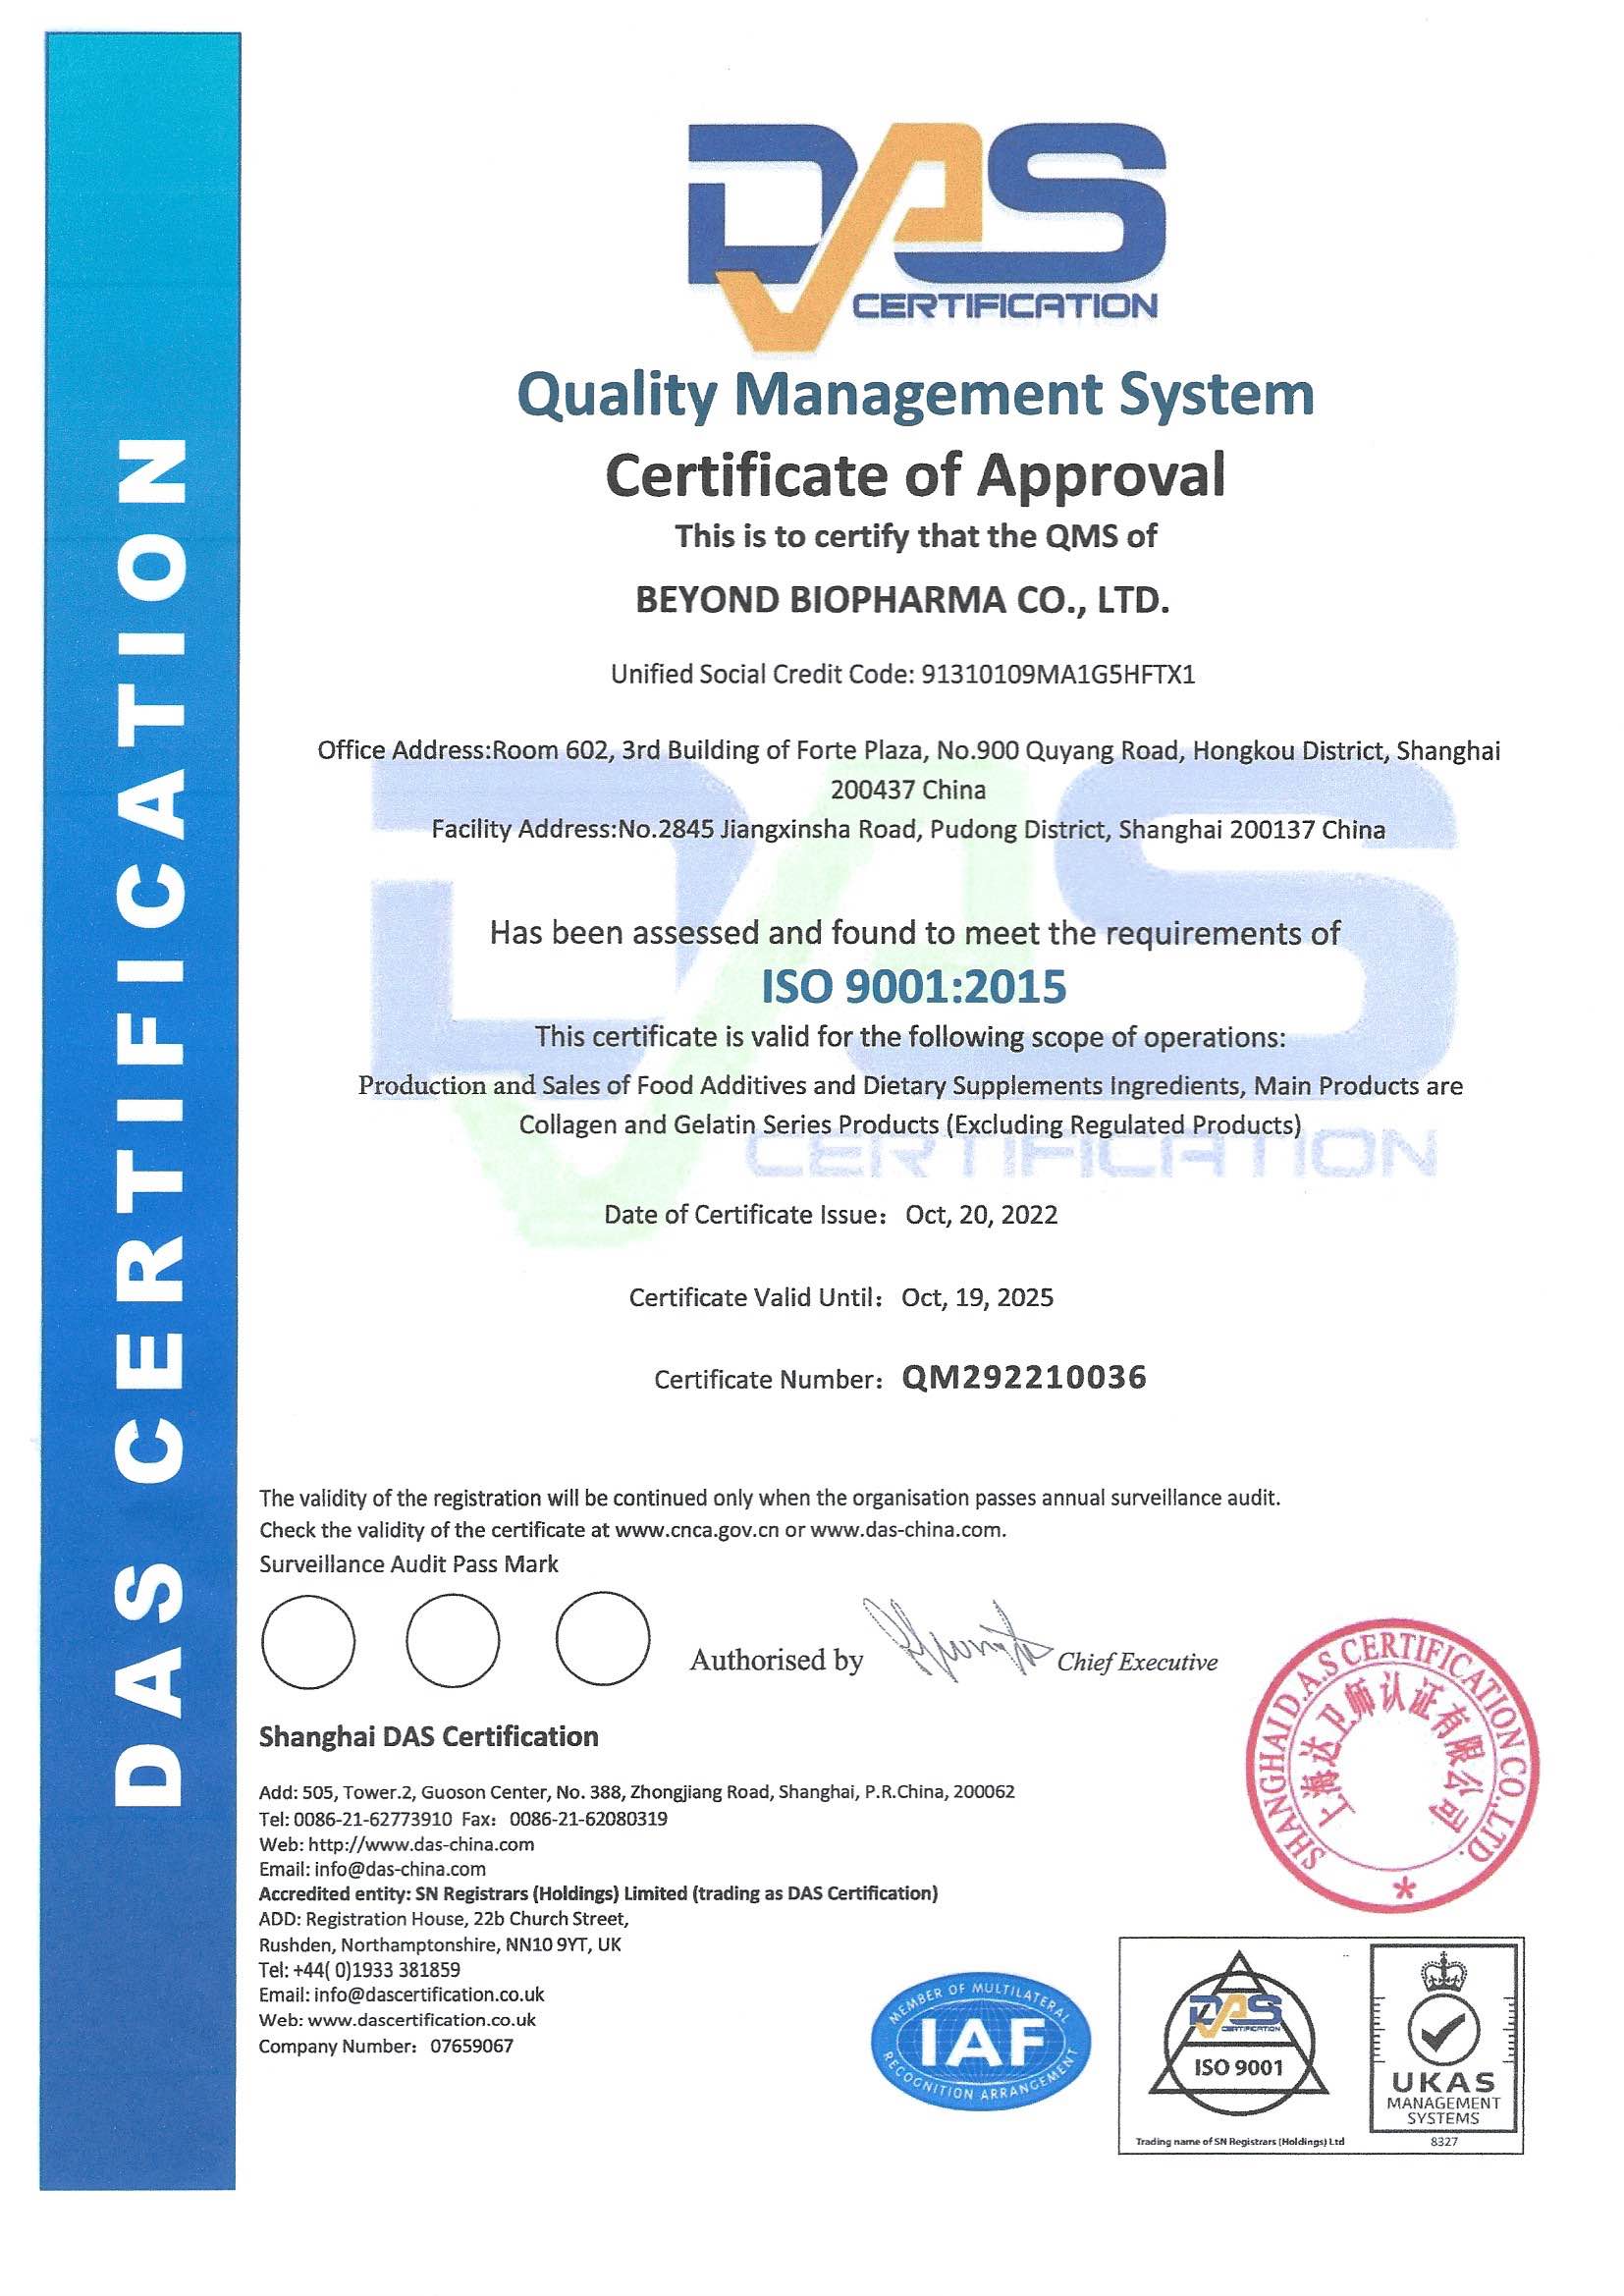 Apsveicam mūsu uzņēmumu ar sekmīgu kvalitātes vadības sistēmas ISO 9001:2015 sertifikāta jaunināšanu...